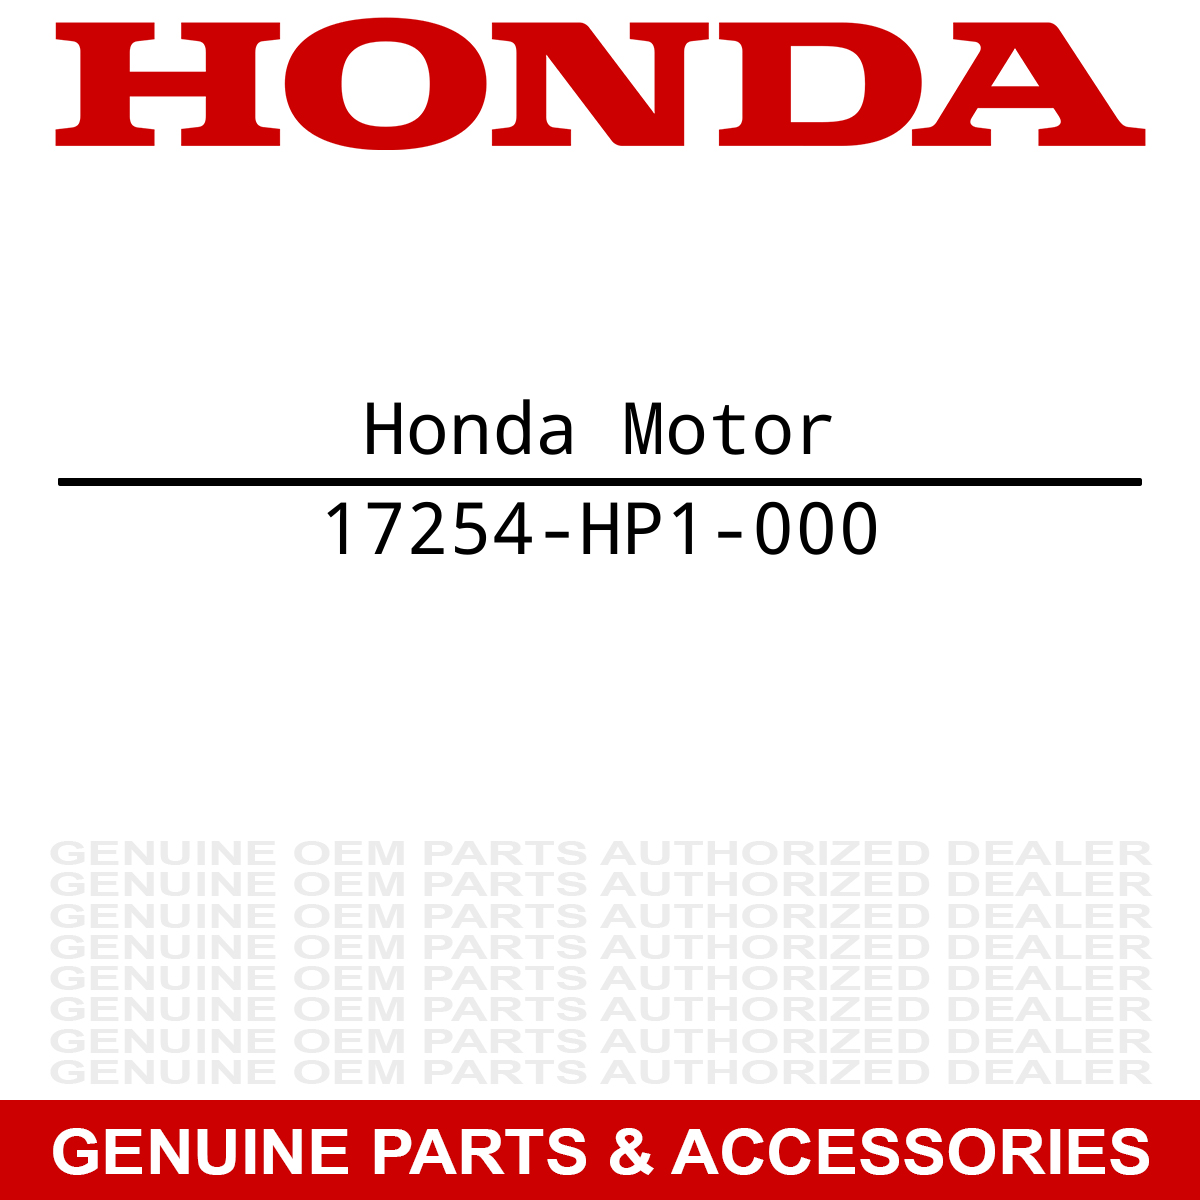 Honda 17254-HP1-000 Element Sportrax 450